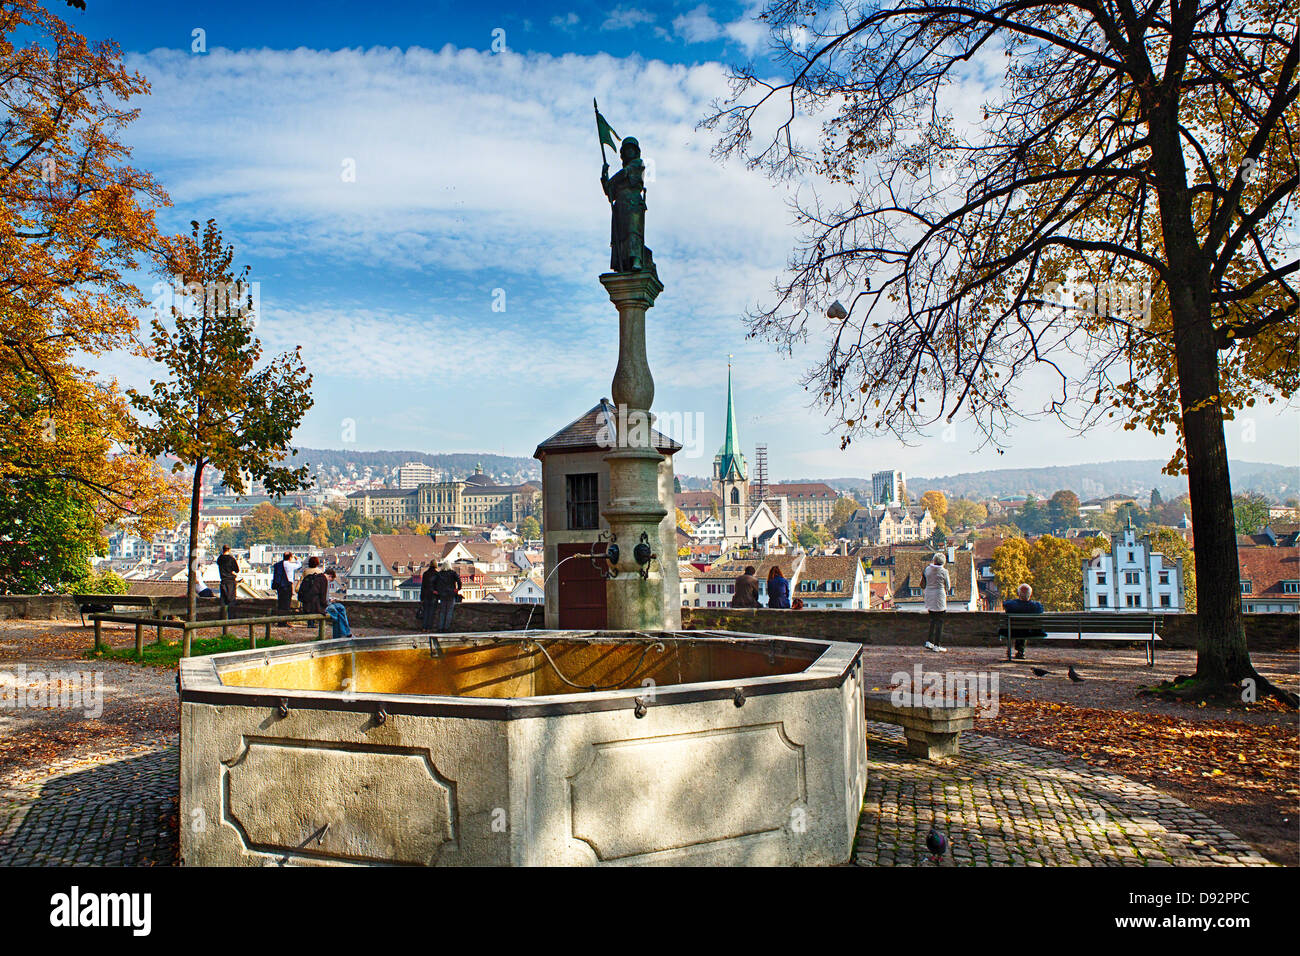 Fontaine historique dans le Lindenhof Hill Park, Zurich, Suisse Banque D'Images